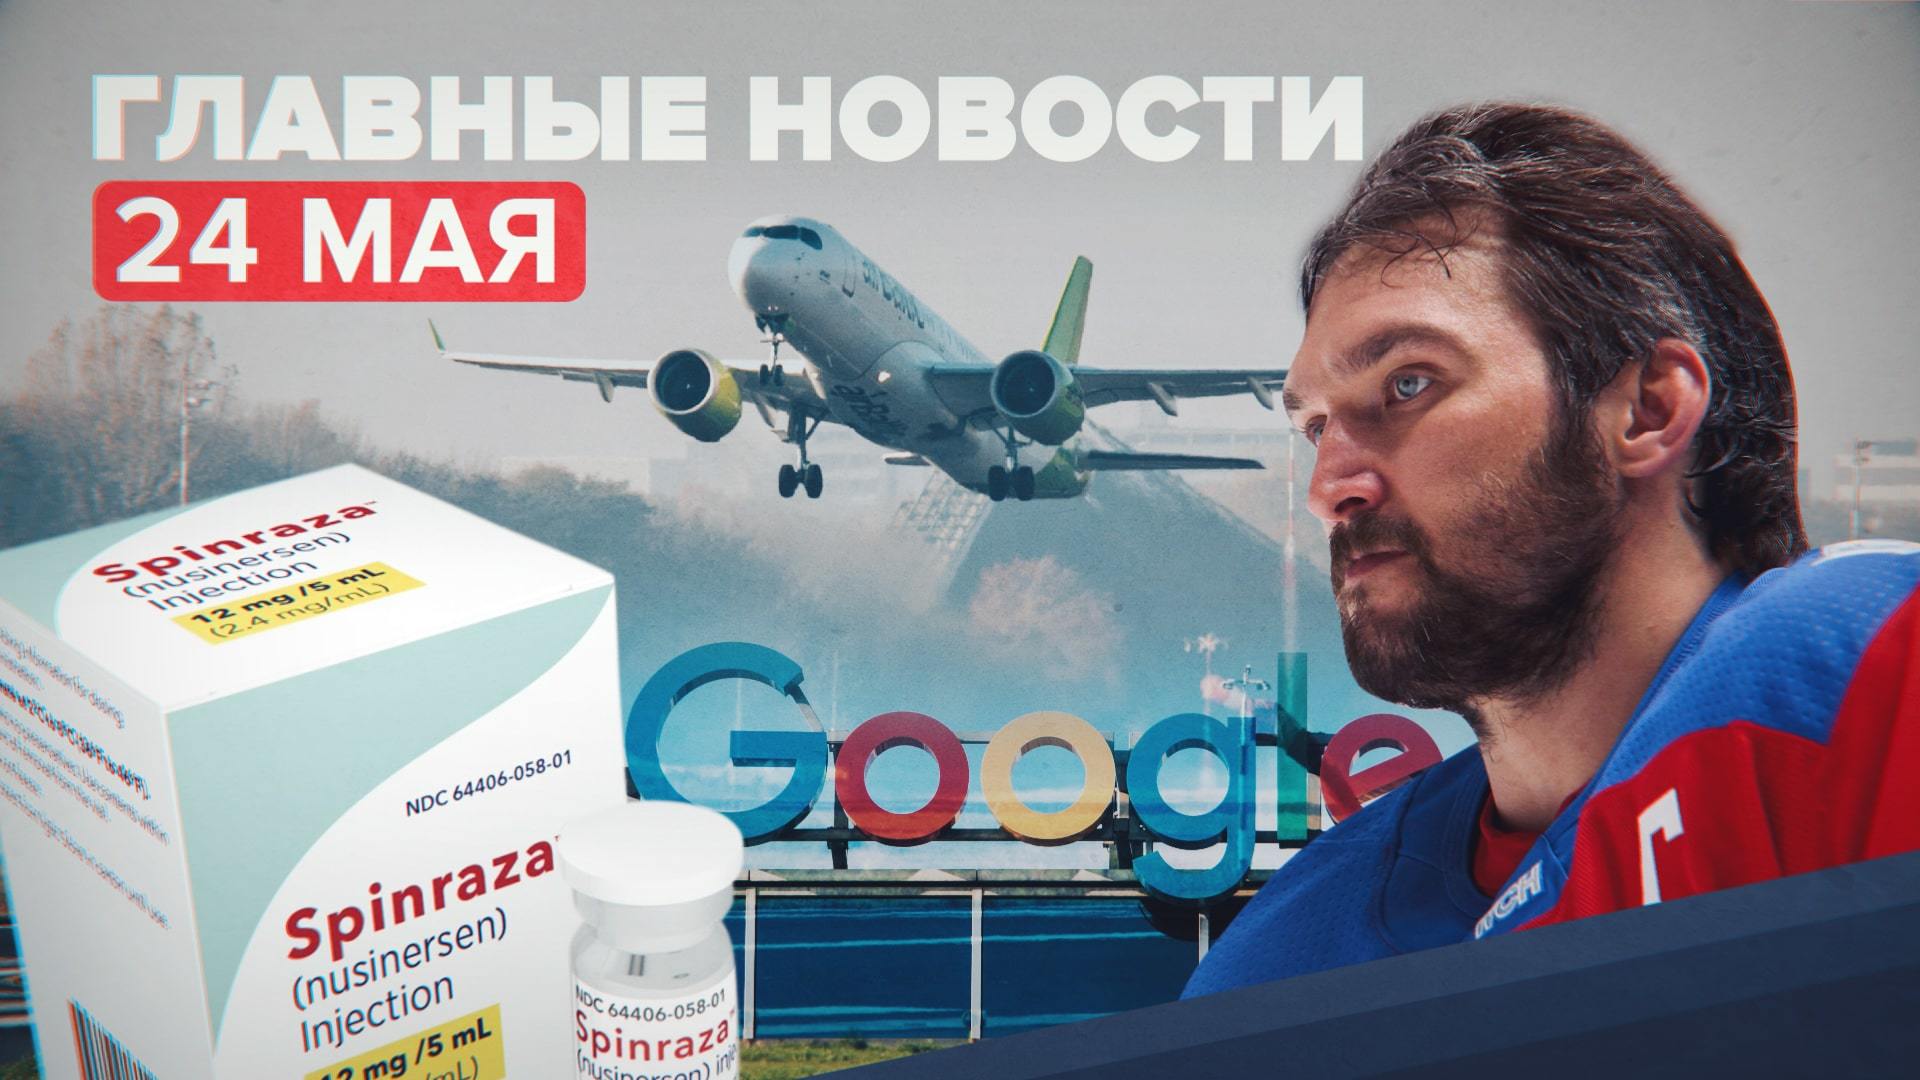 Новости дня — 24 мая: реакция на экстренную посадку самолёта в Минске, заявление РКН по Google